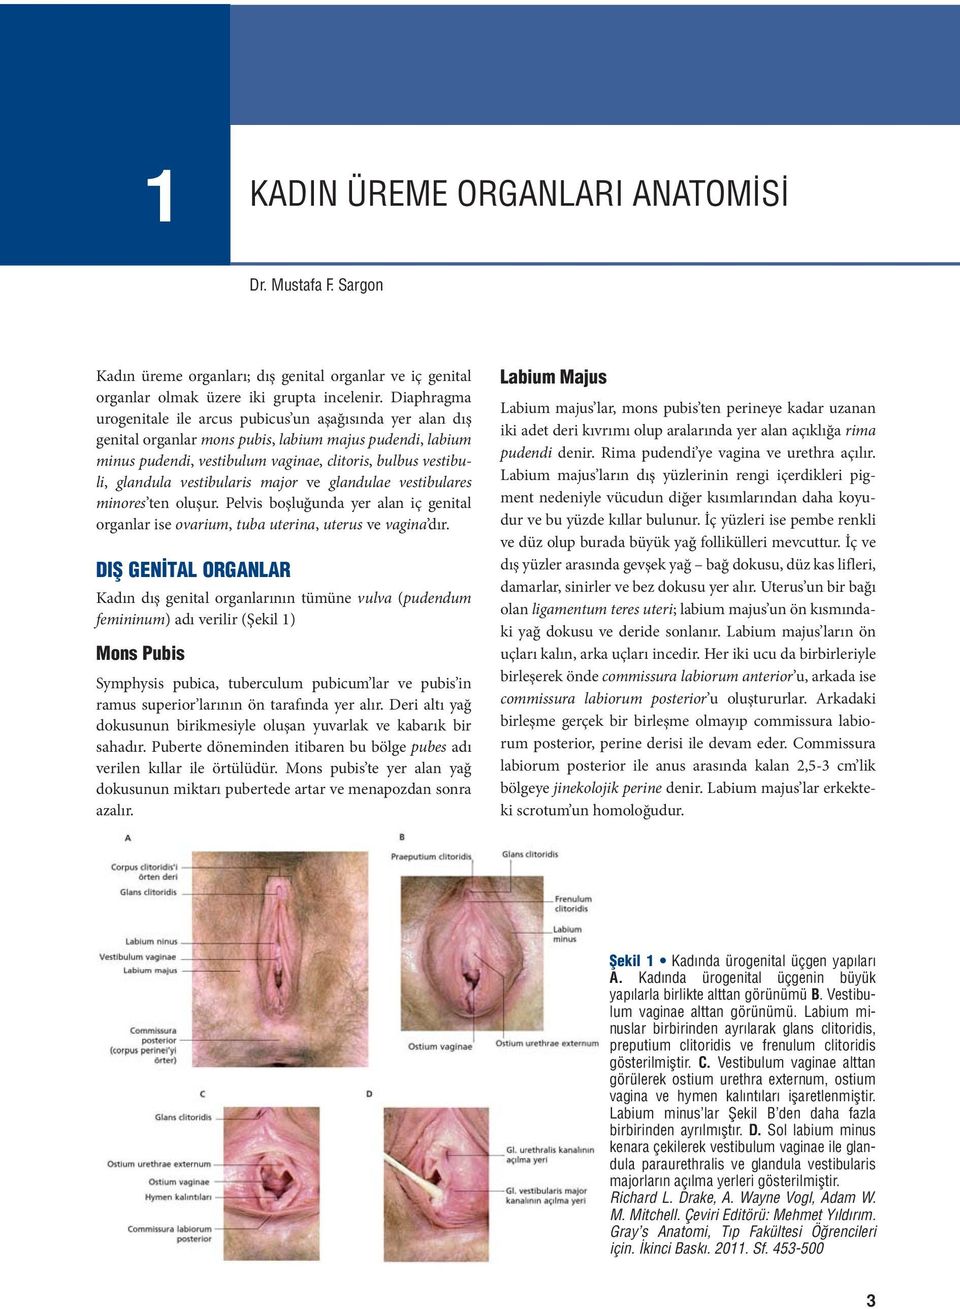 vestibularis major ve glandulae vestibulares minores ten oluşur. Pelvis boşluğunda yer alan iç genital organlar ise ovarium, tuba uterina, uterus ve vagina dır.